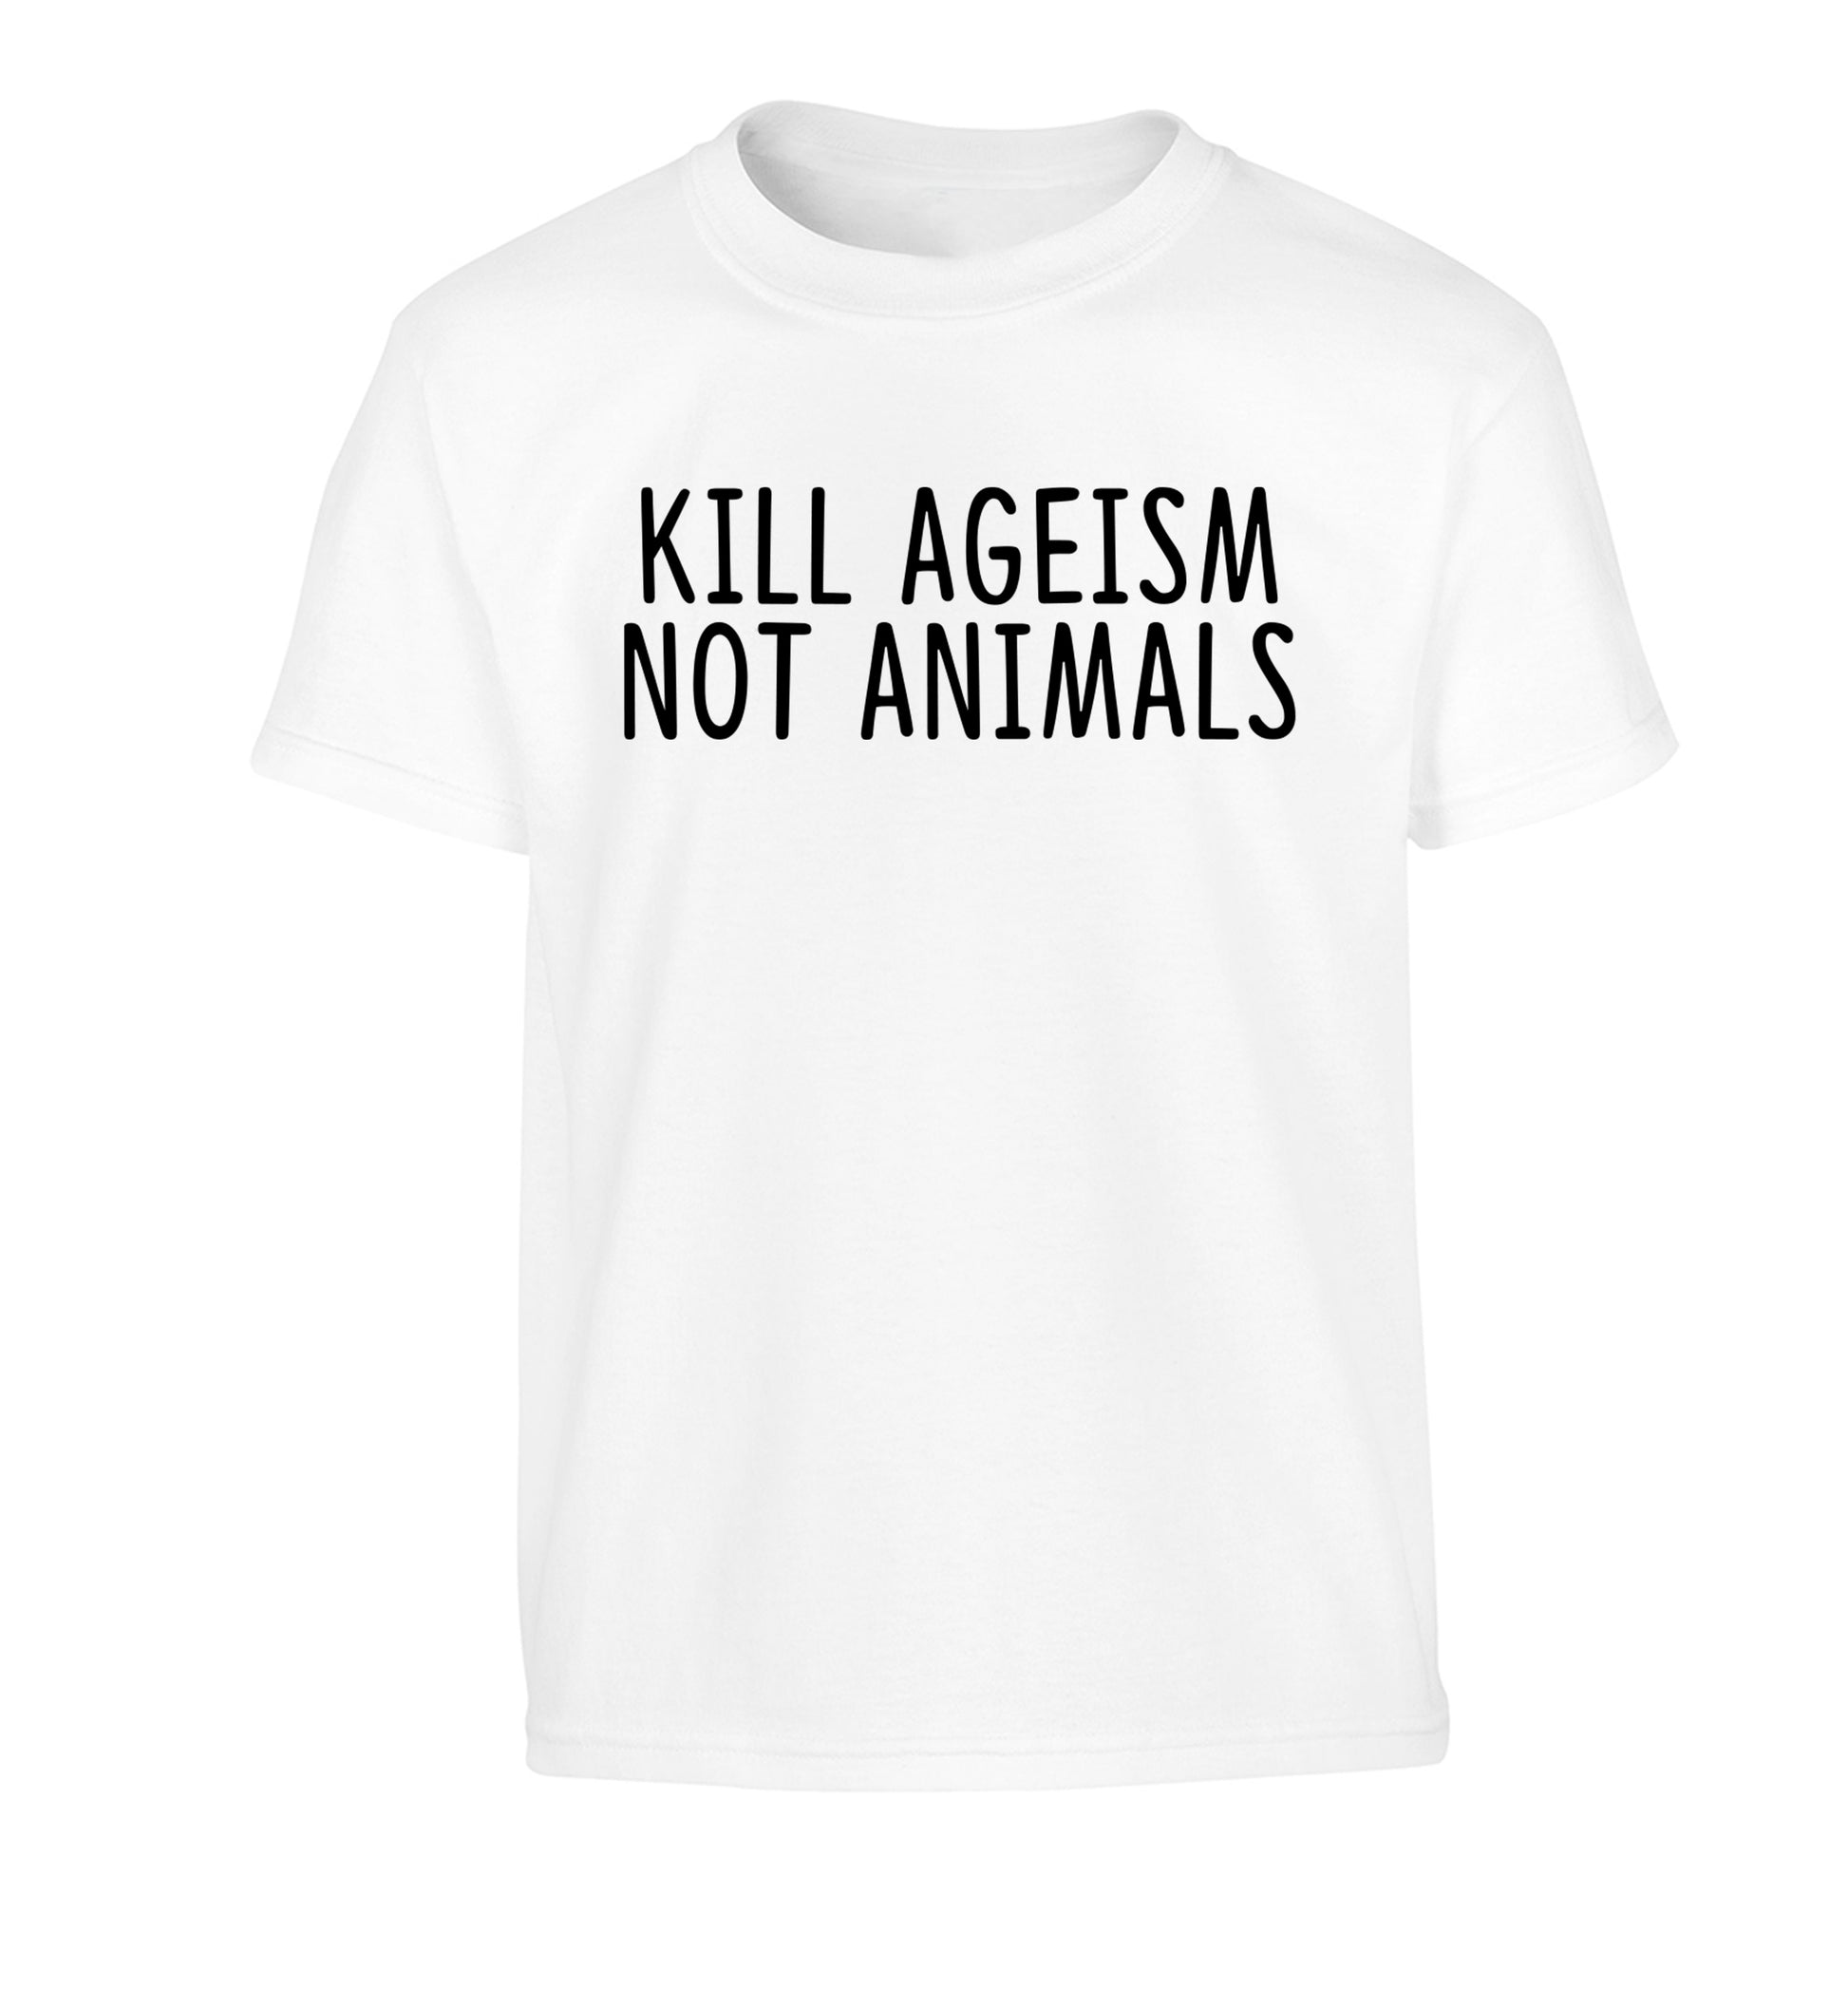 Kill Ageism Not Animals Children's white Tshirt 12-13 Years